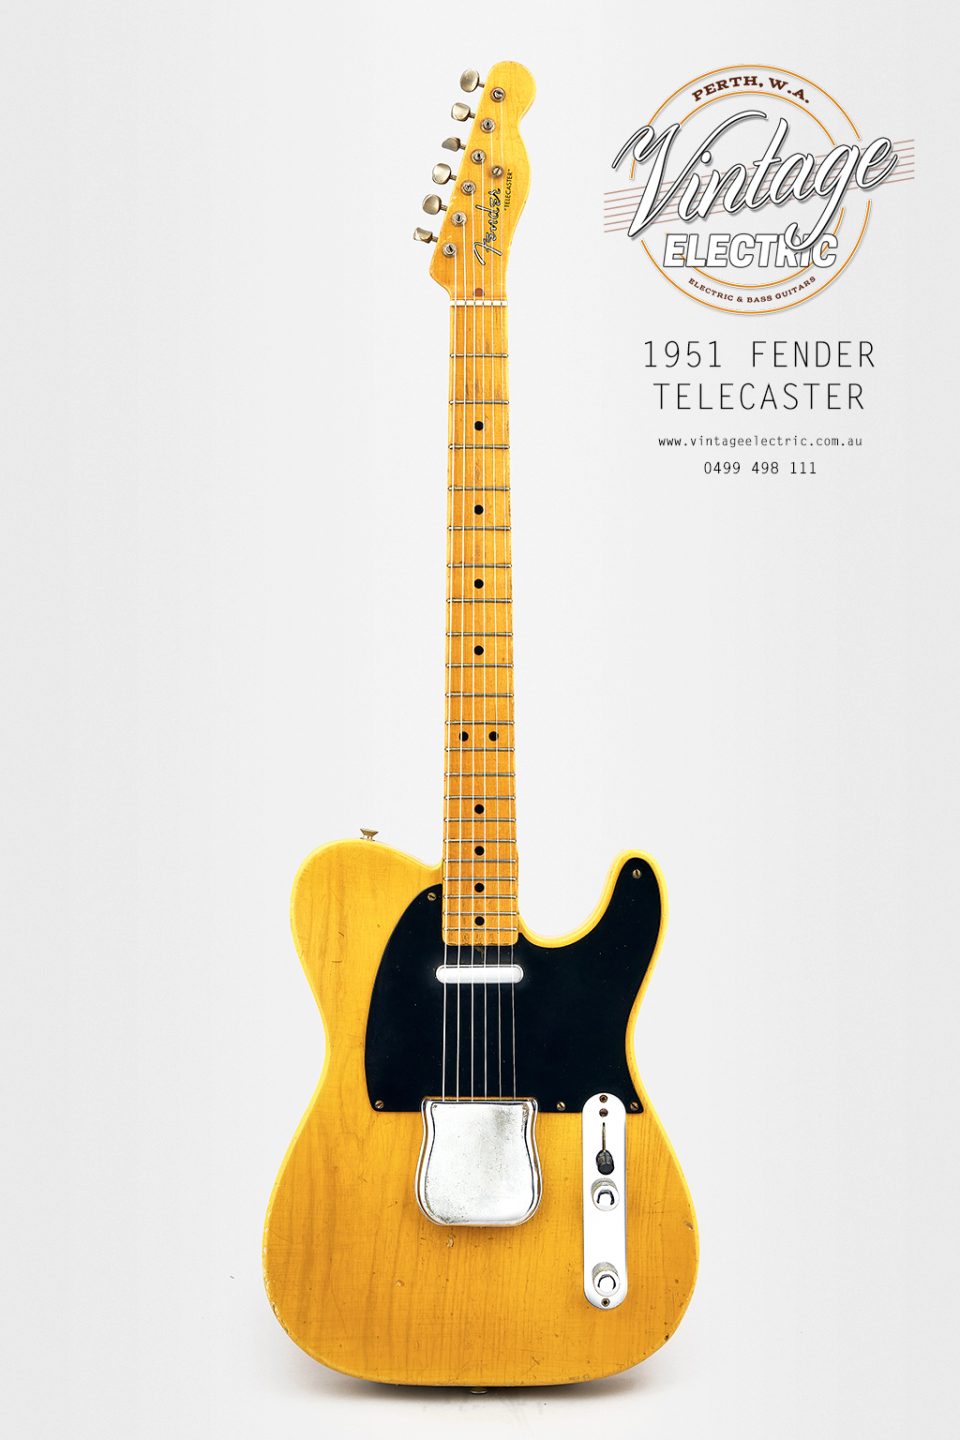 1951 Fender Telecaster Vintage Guitar